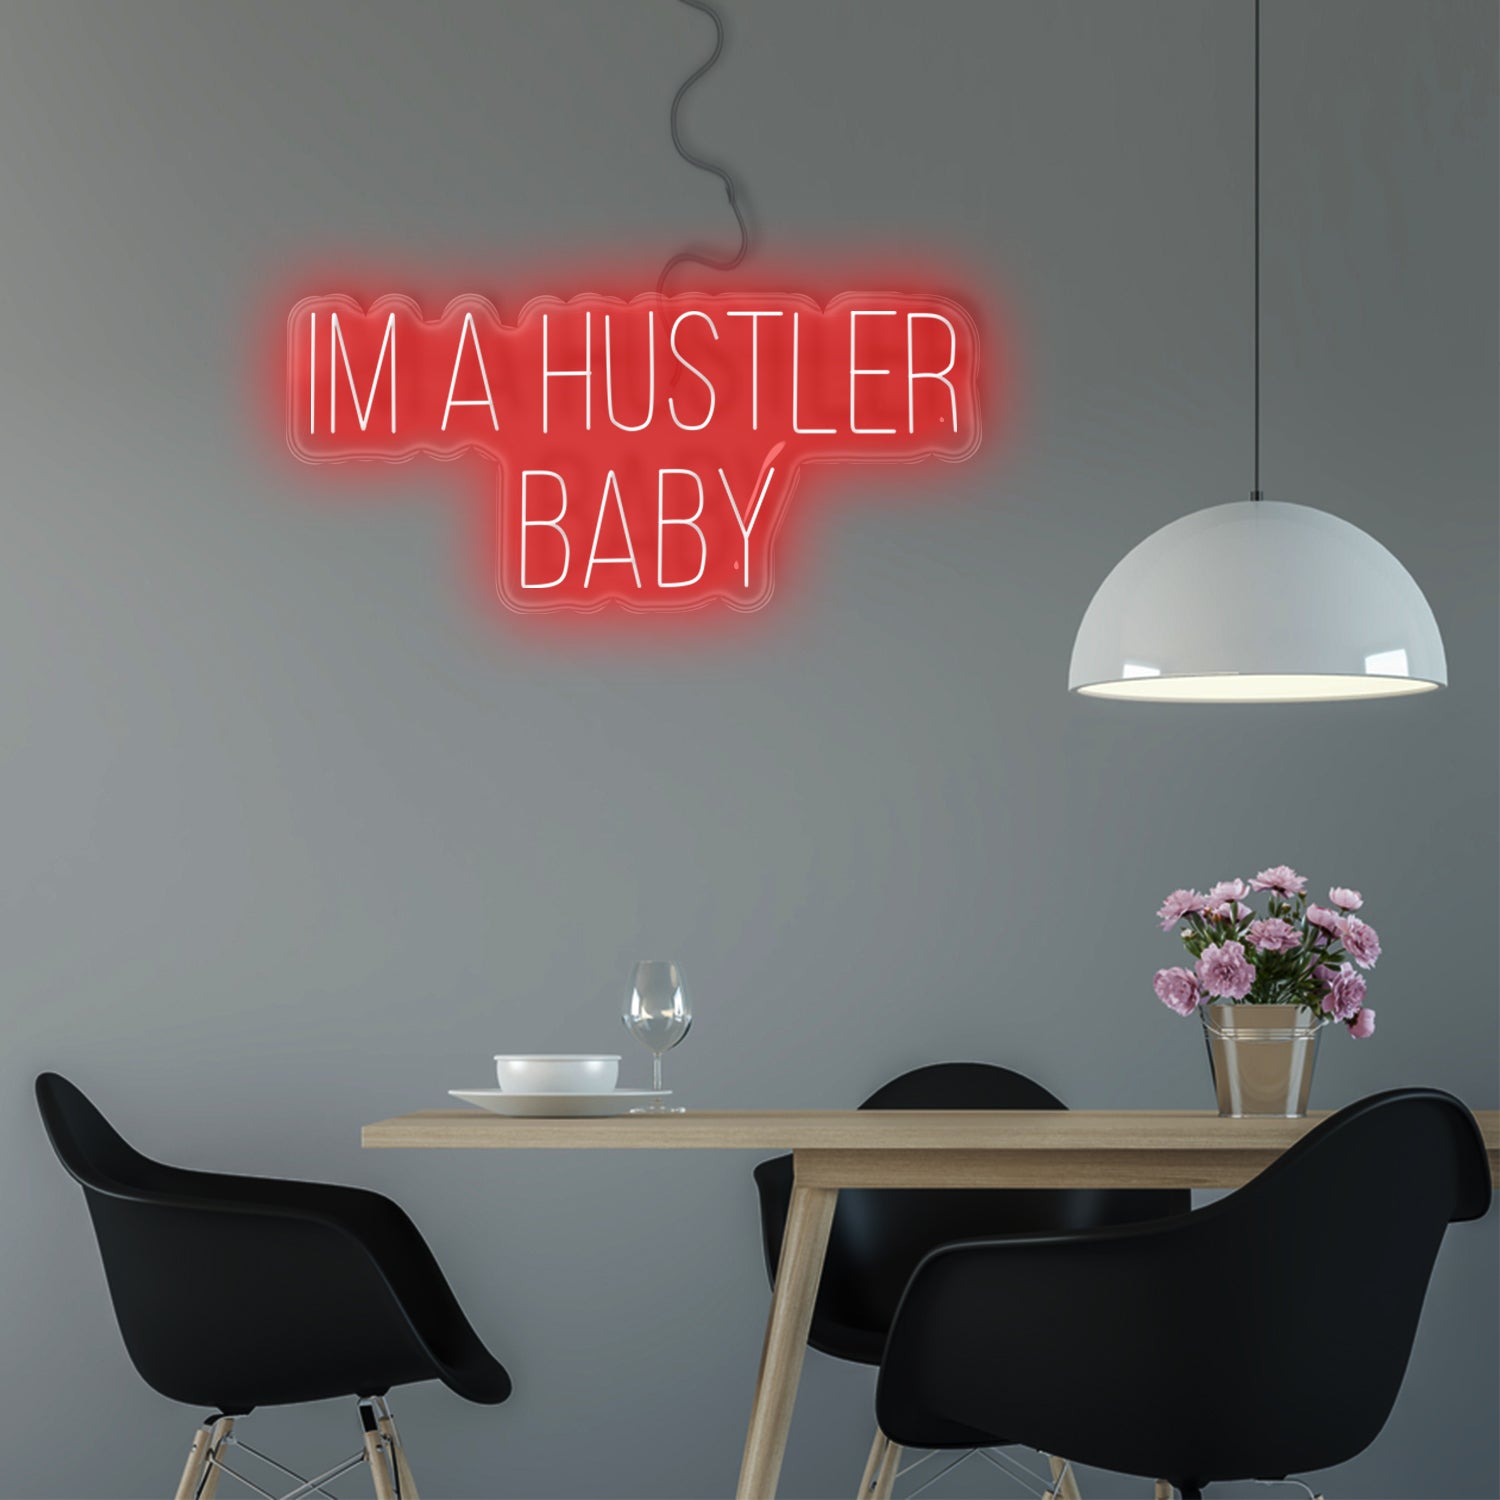 Im a Hustler Baby